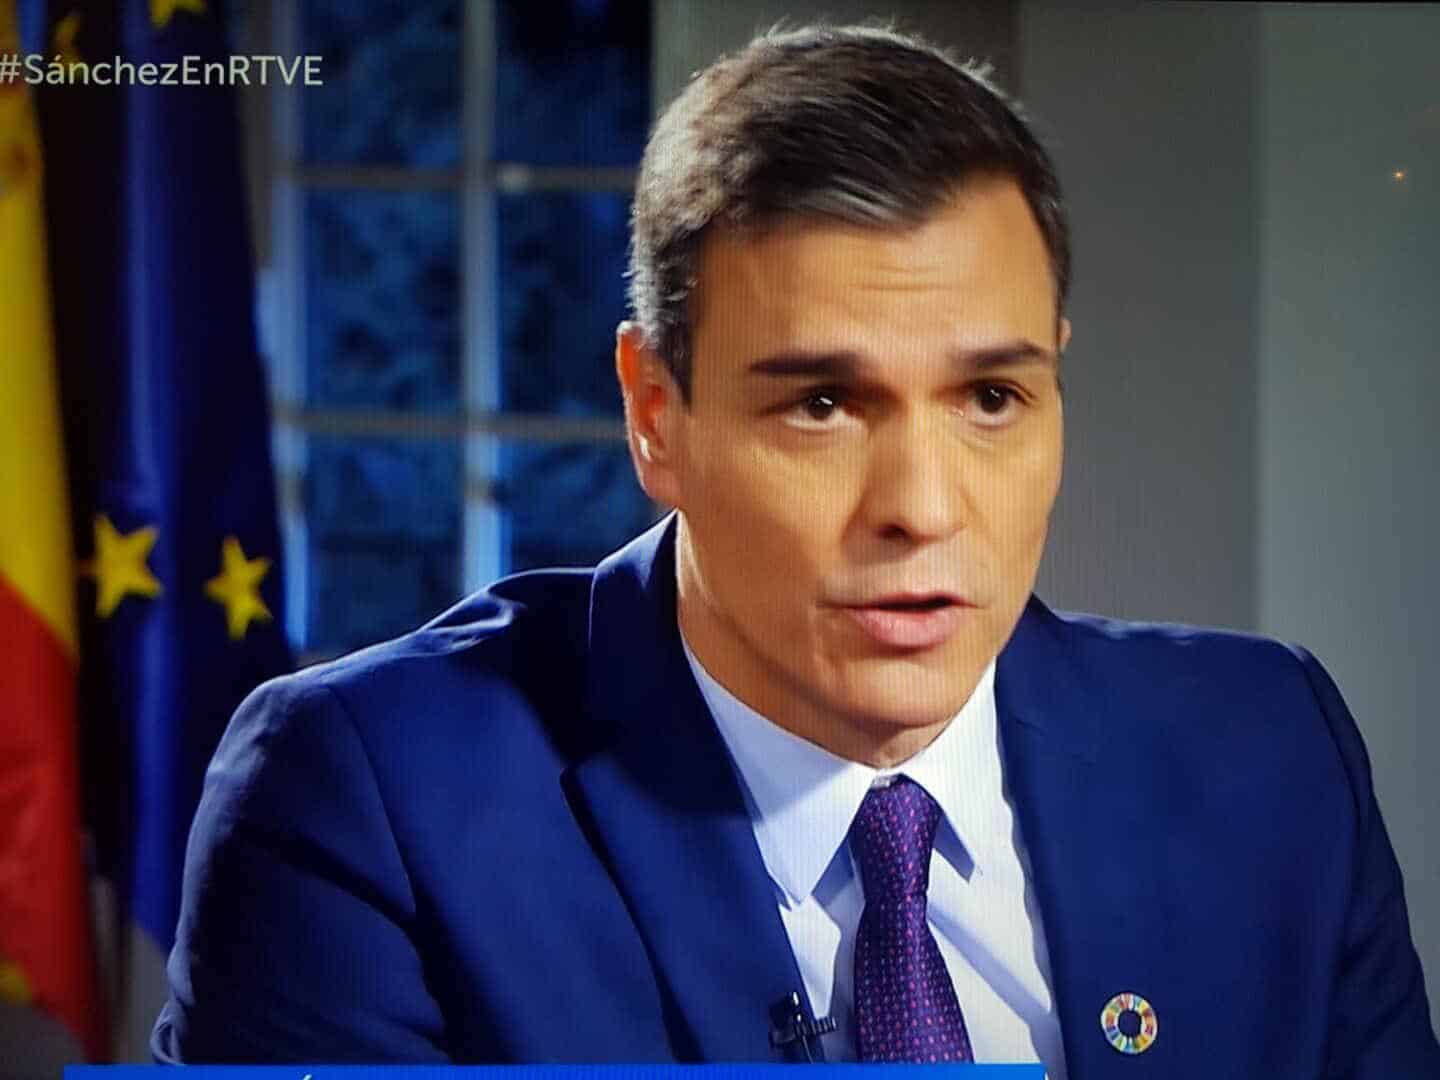 La entrevista en La 1 a Pedro Sánchez lo confirma: esta política no interesa